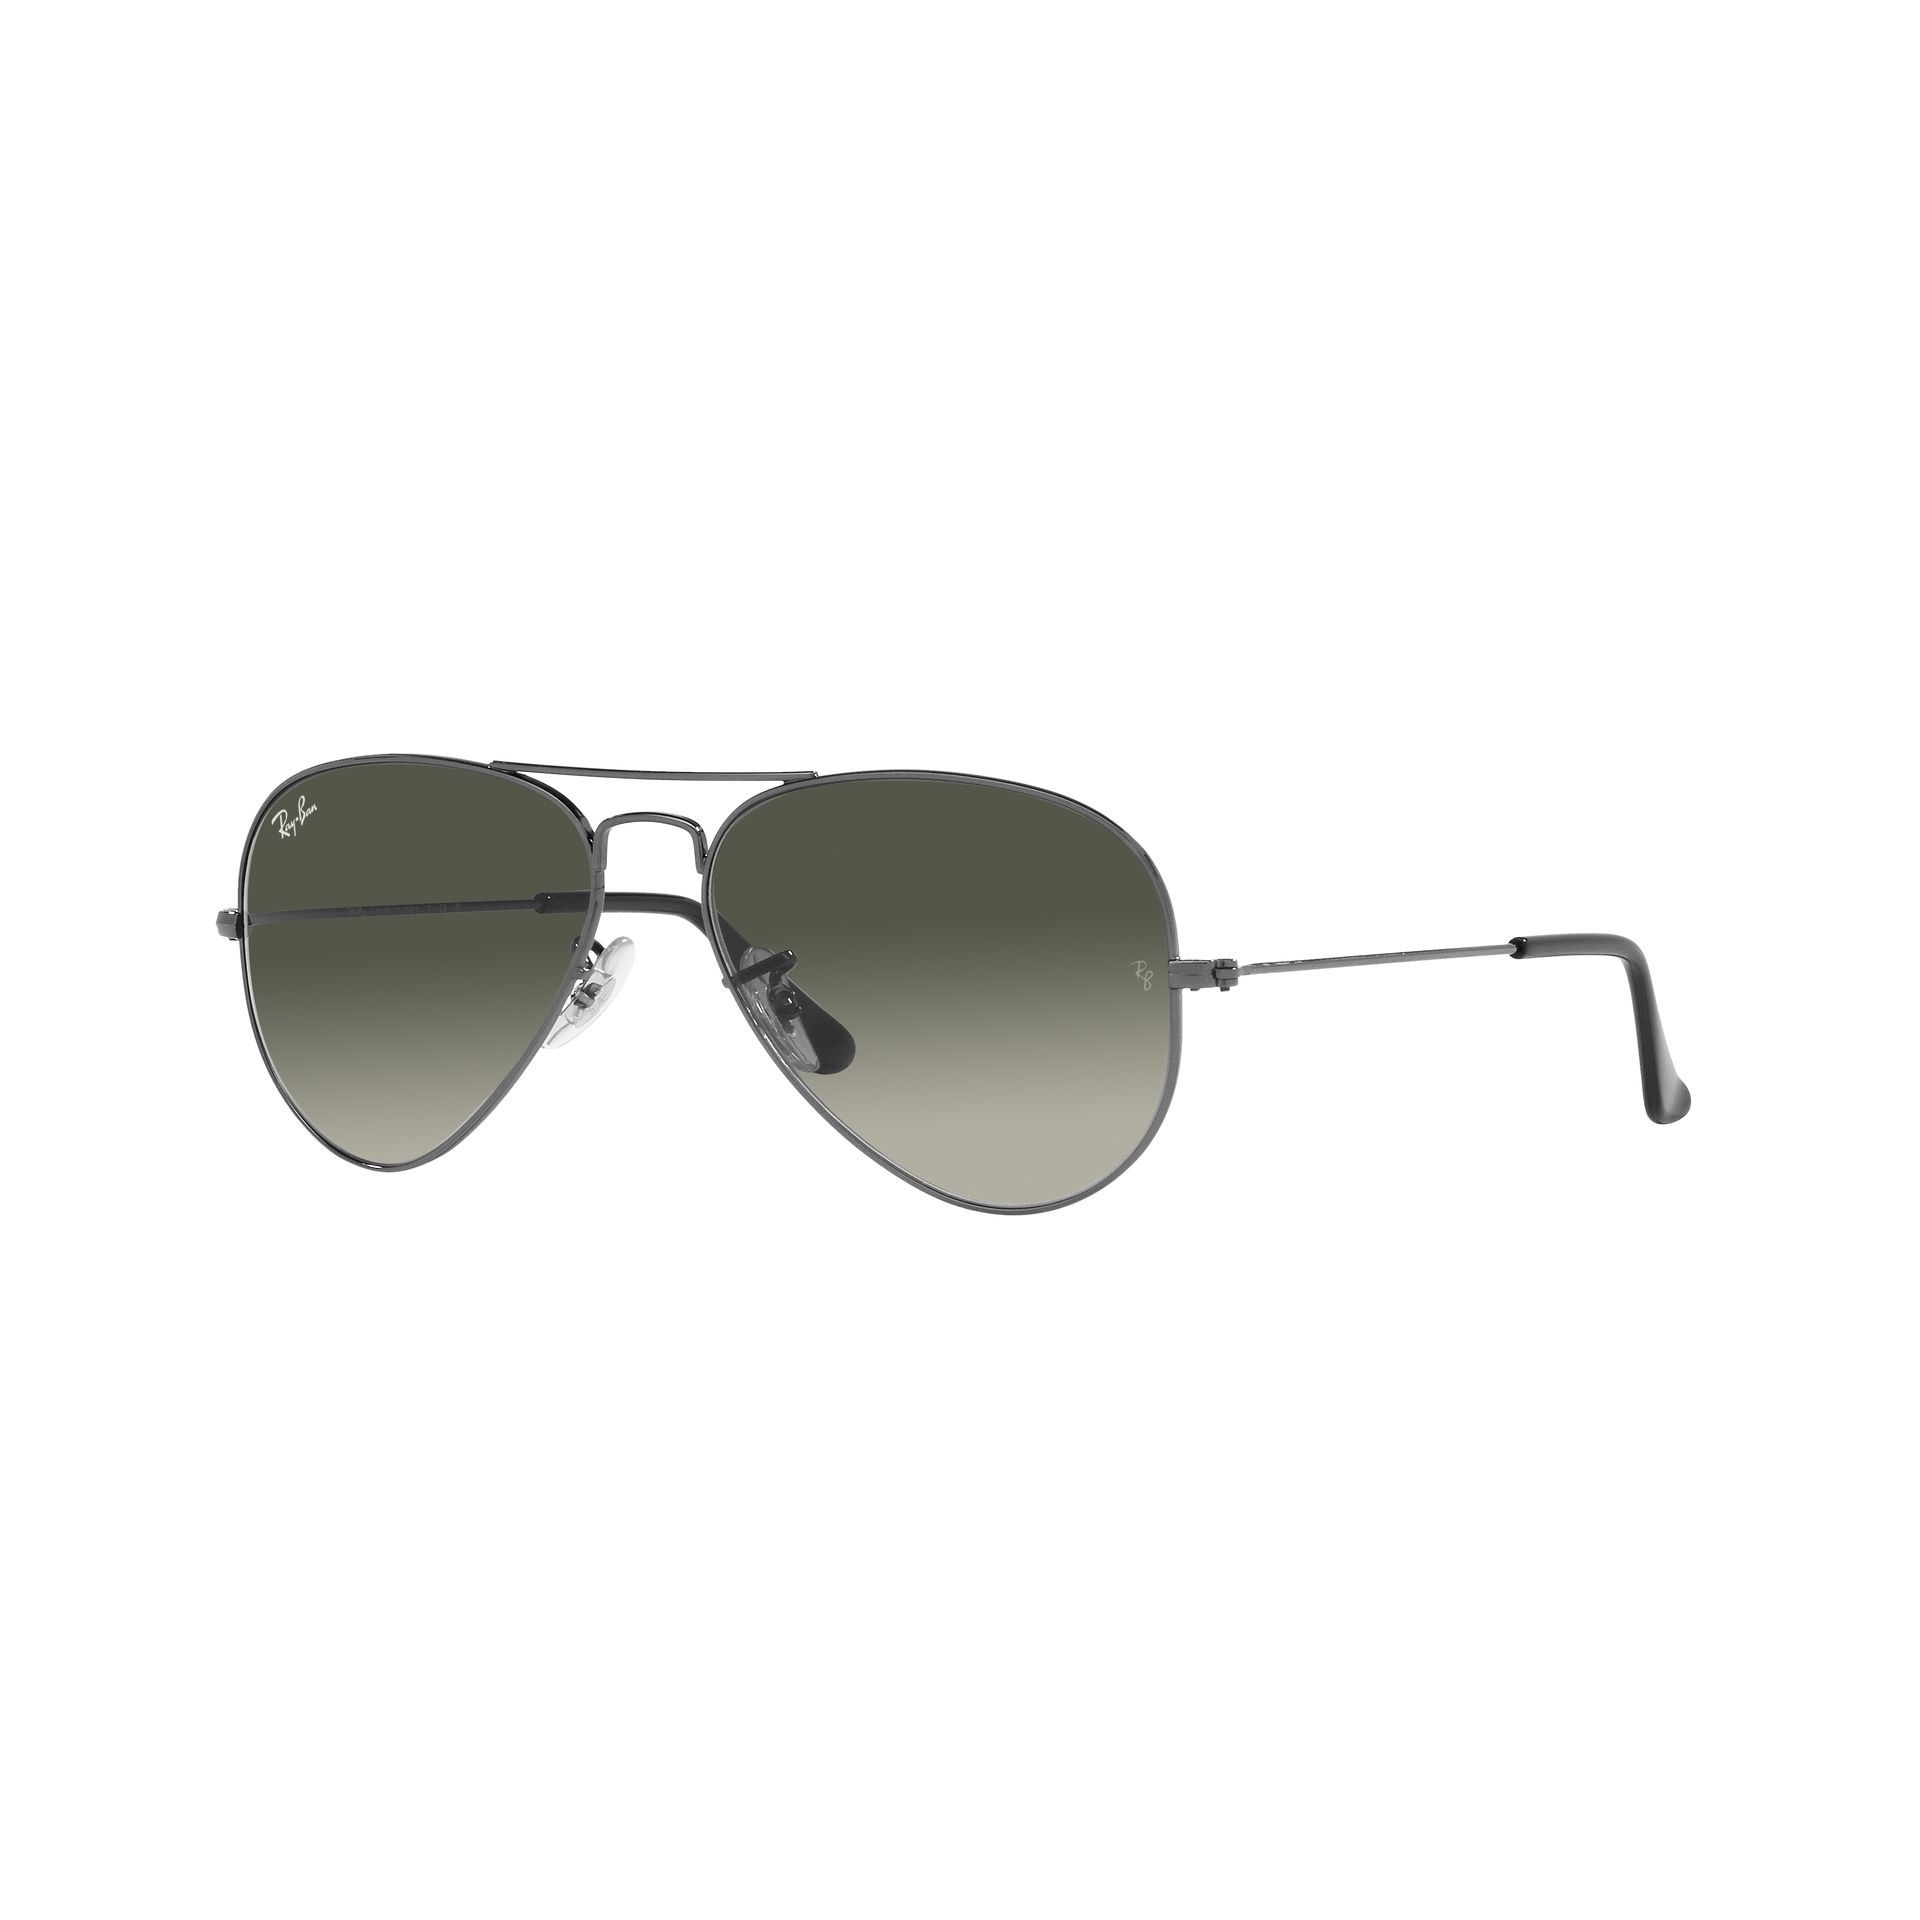 0RB3025 Aviator Sunglasses 004 71 - size 55